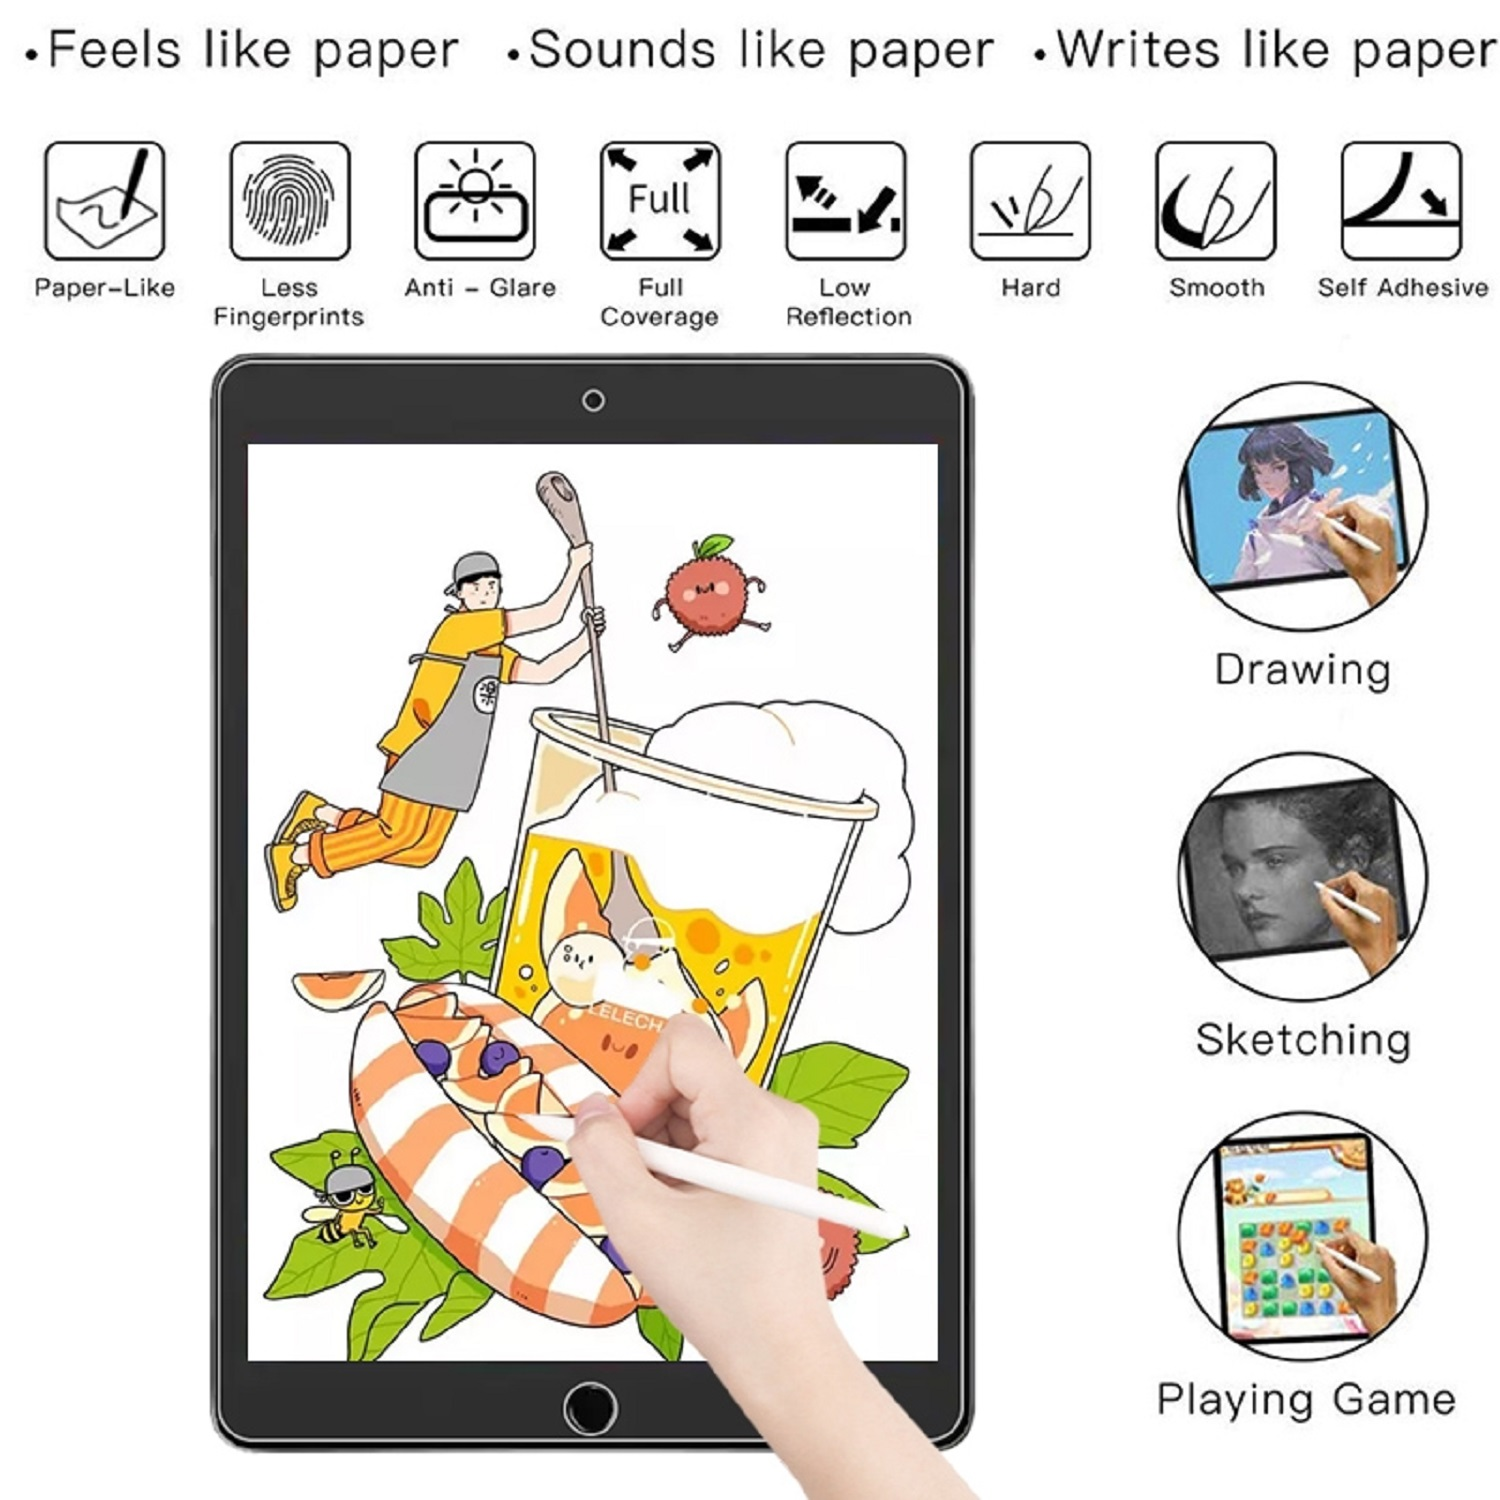 iPad Pro 2022) Schutzfolie Apple Paperfeel 1x PROTECTORKING Schreiben Skizzieren Malen 12.9 Displayschutzfolie(für